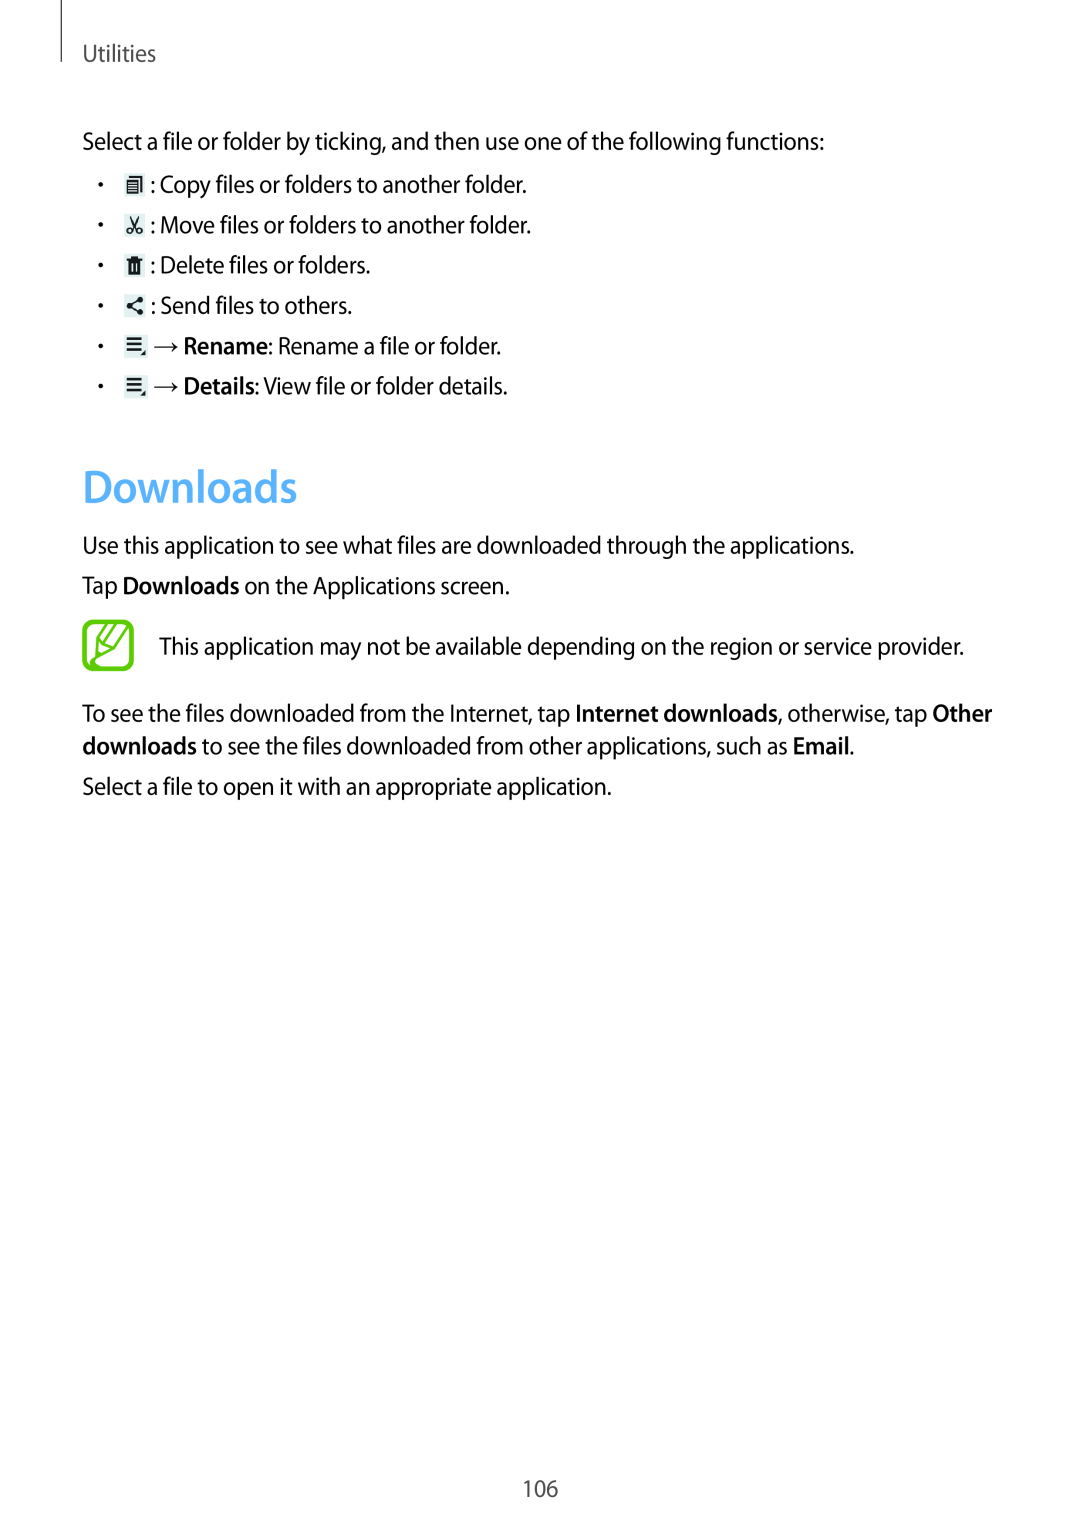 Samsung GT-N5100 user manual Downloads, Utilities 